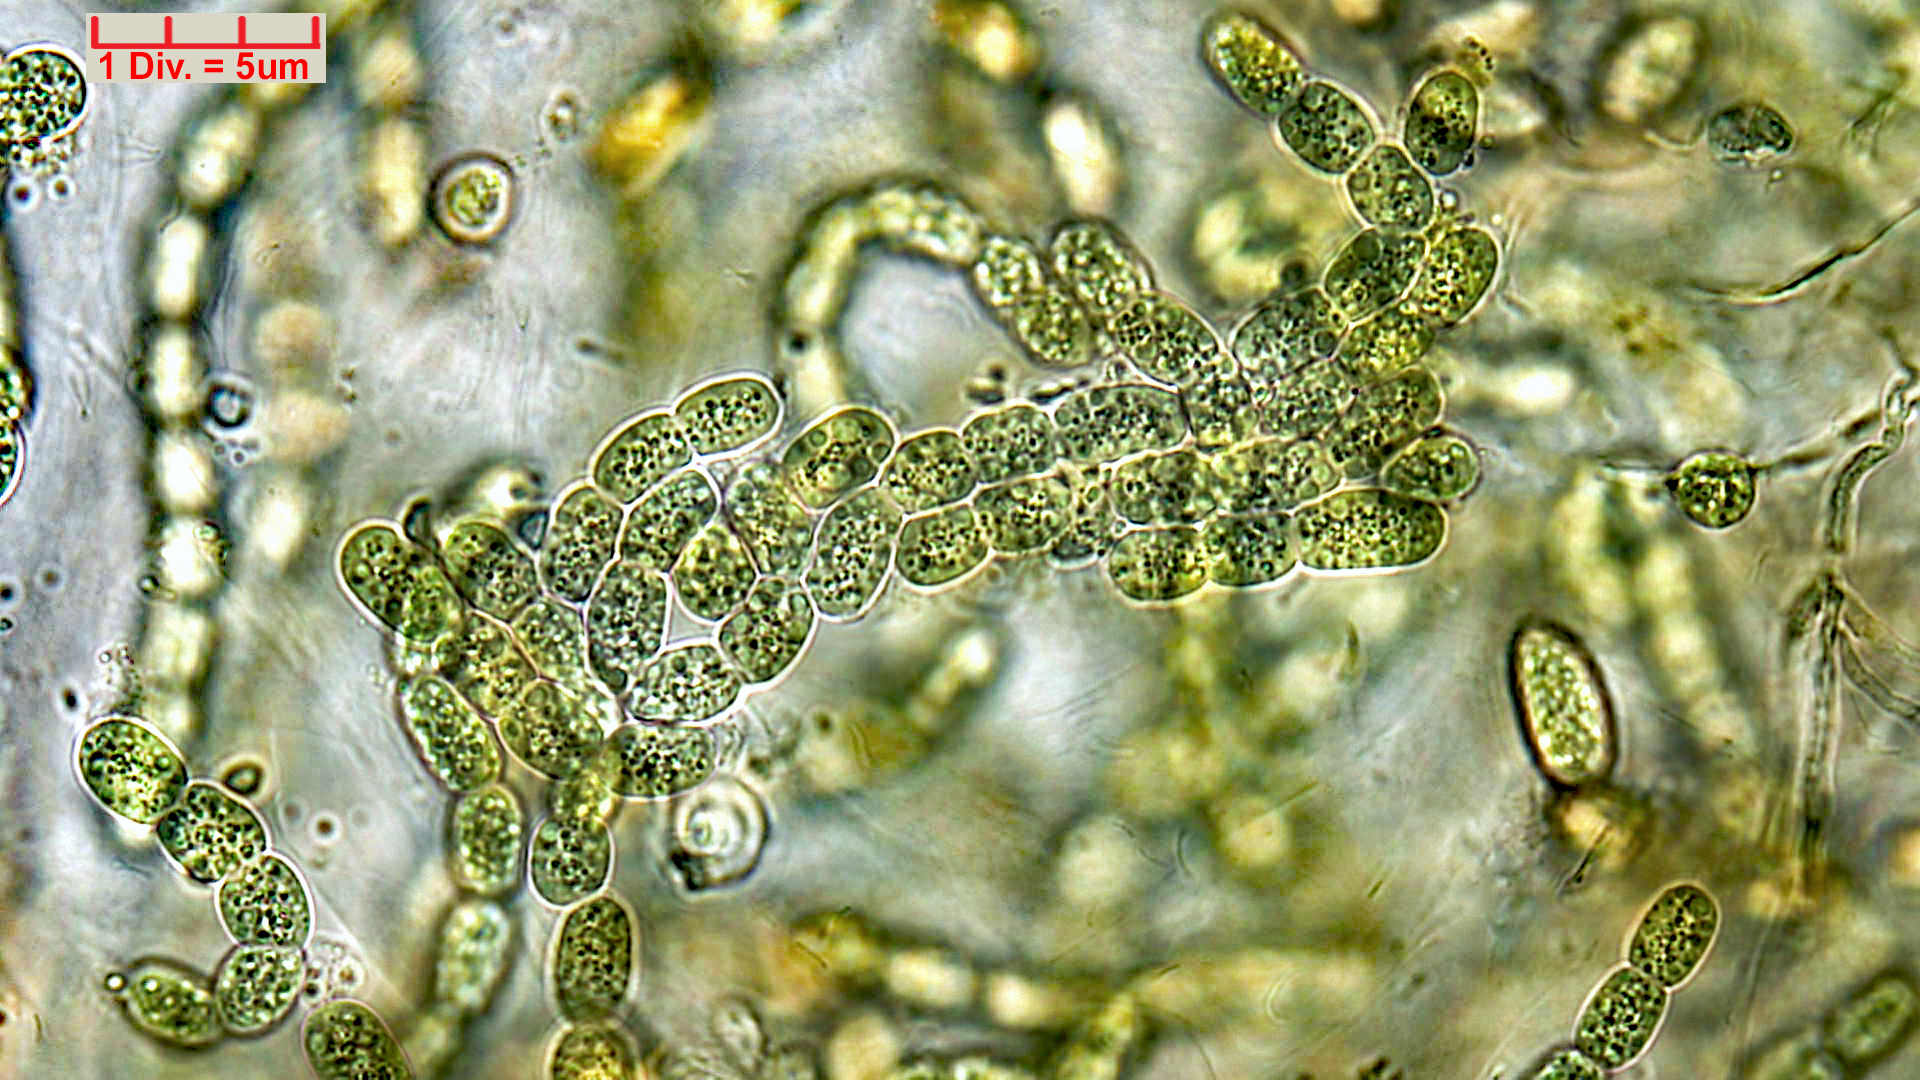 ././././Cyanobacteria/Nostocales/Nostocaceae/Desmonostoc/muscorum/desmonostoc-muscorum-592.jpg